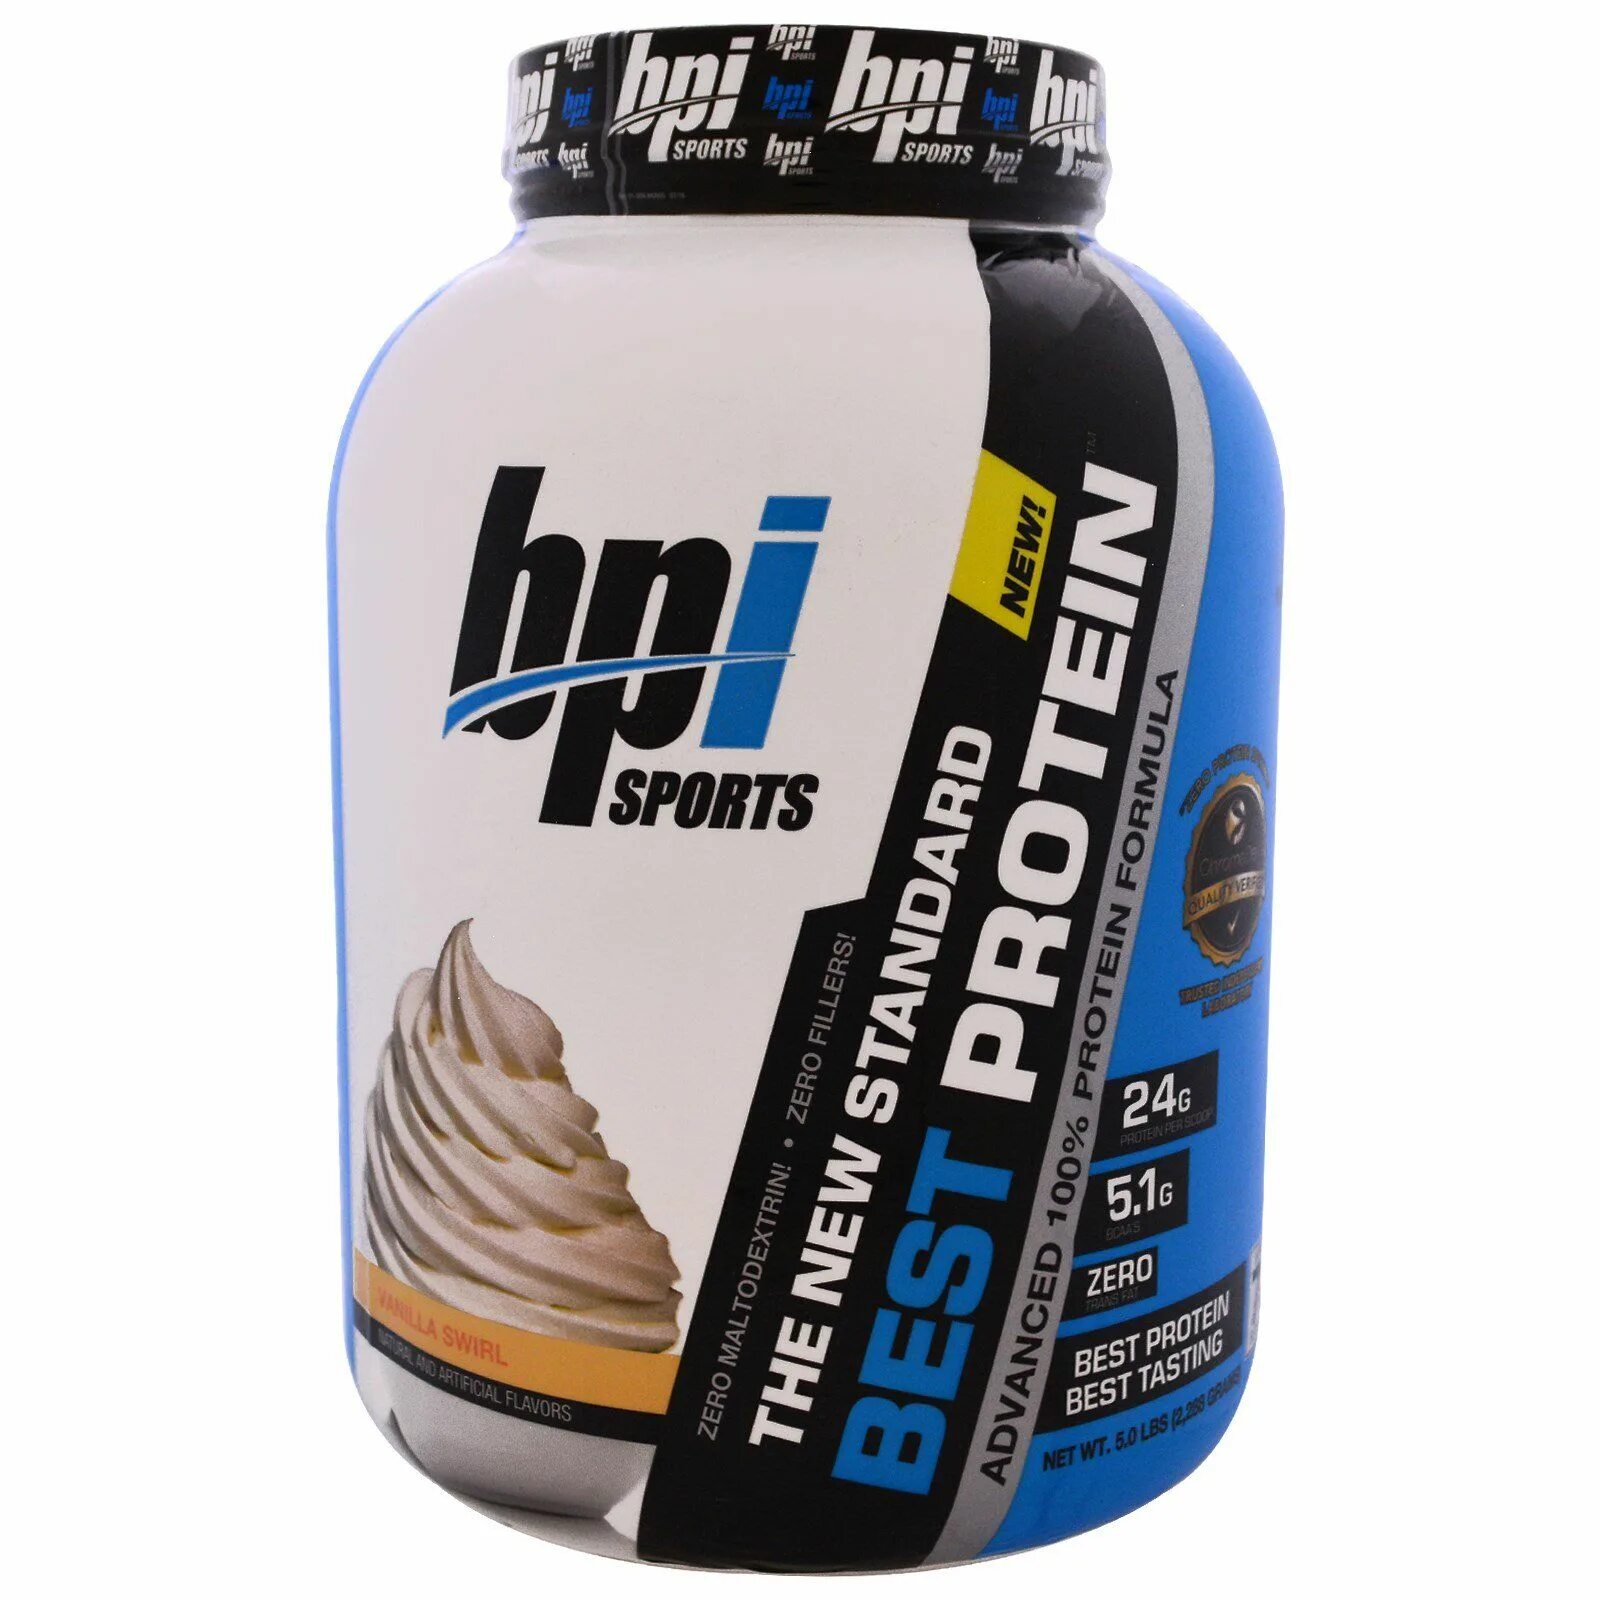 Протеин в косметике. BPI best Protein 5lb. BPI Sports протеин. Протеин artlab High Protein Formula. Белково-протеиновая смесь.